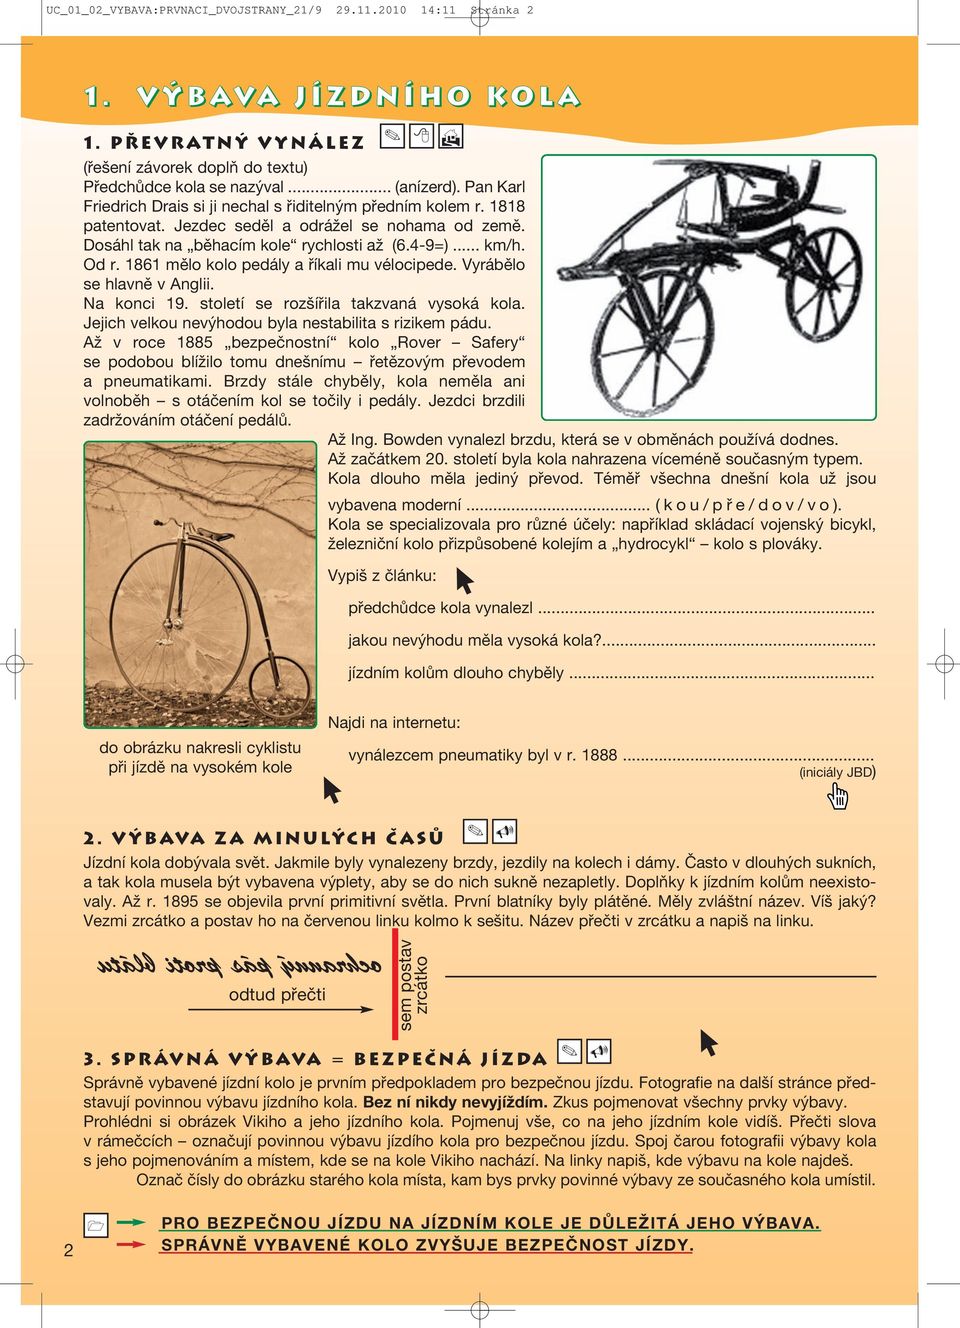 1861 mělo kolo pedály a říkali mu vélocipede. Vyrábělo se hlavně v Anglii. Na konci 19. století se rozšířila takzvaná vysoká kola. Jejich velkou nevýhodou byla nestabilita s rizikem pádu.